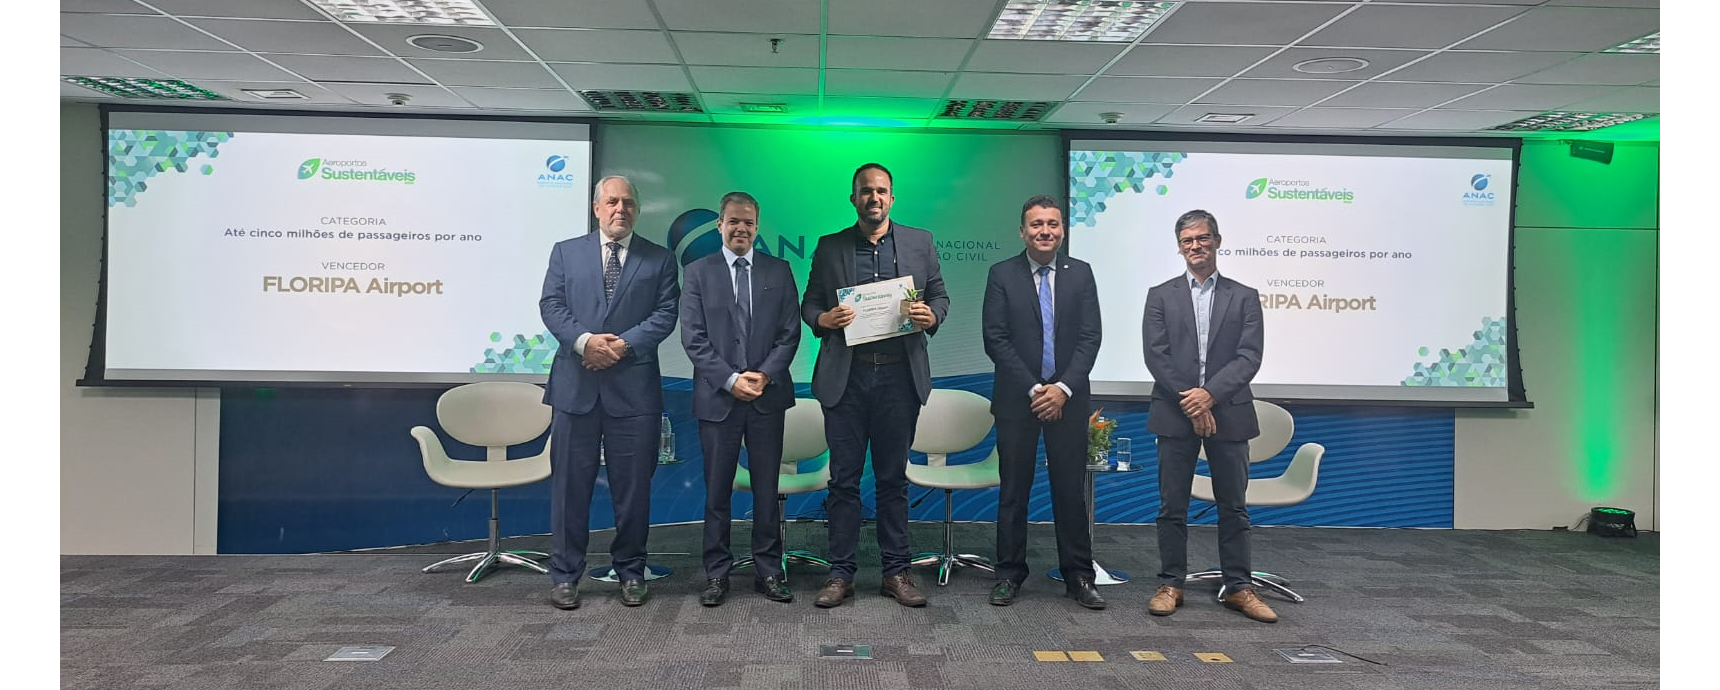 Aeropuerto de Florianópolis gana primer lugar en el Premio Anac Aeropuertos Sostenibles